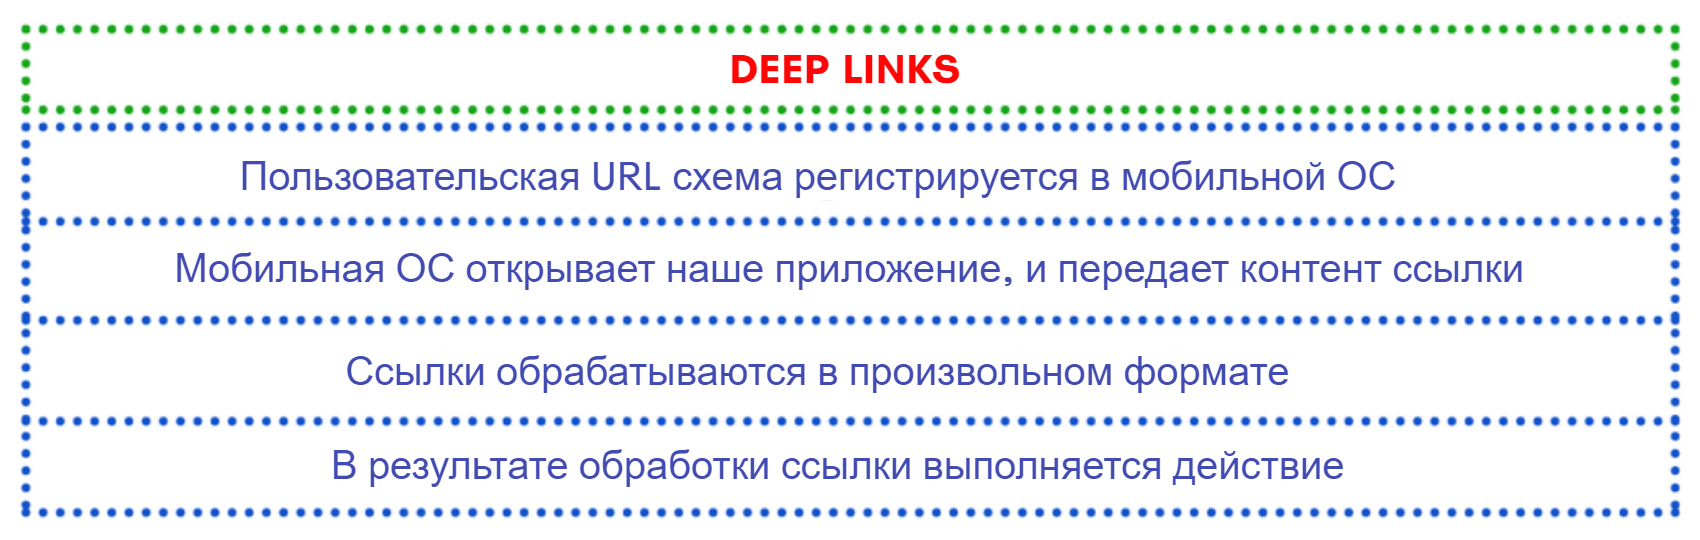 шаги для создания deep link